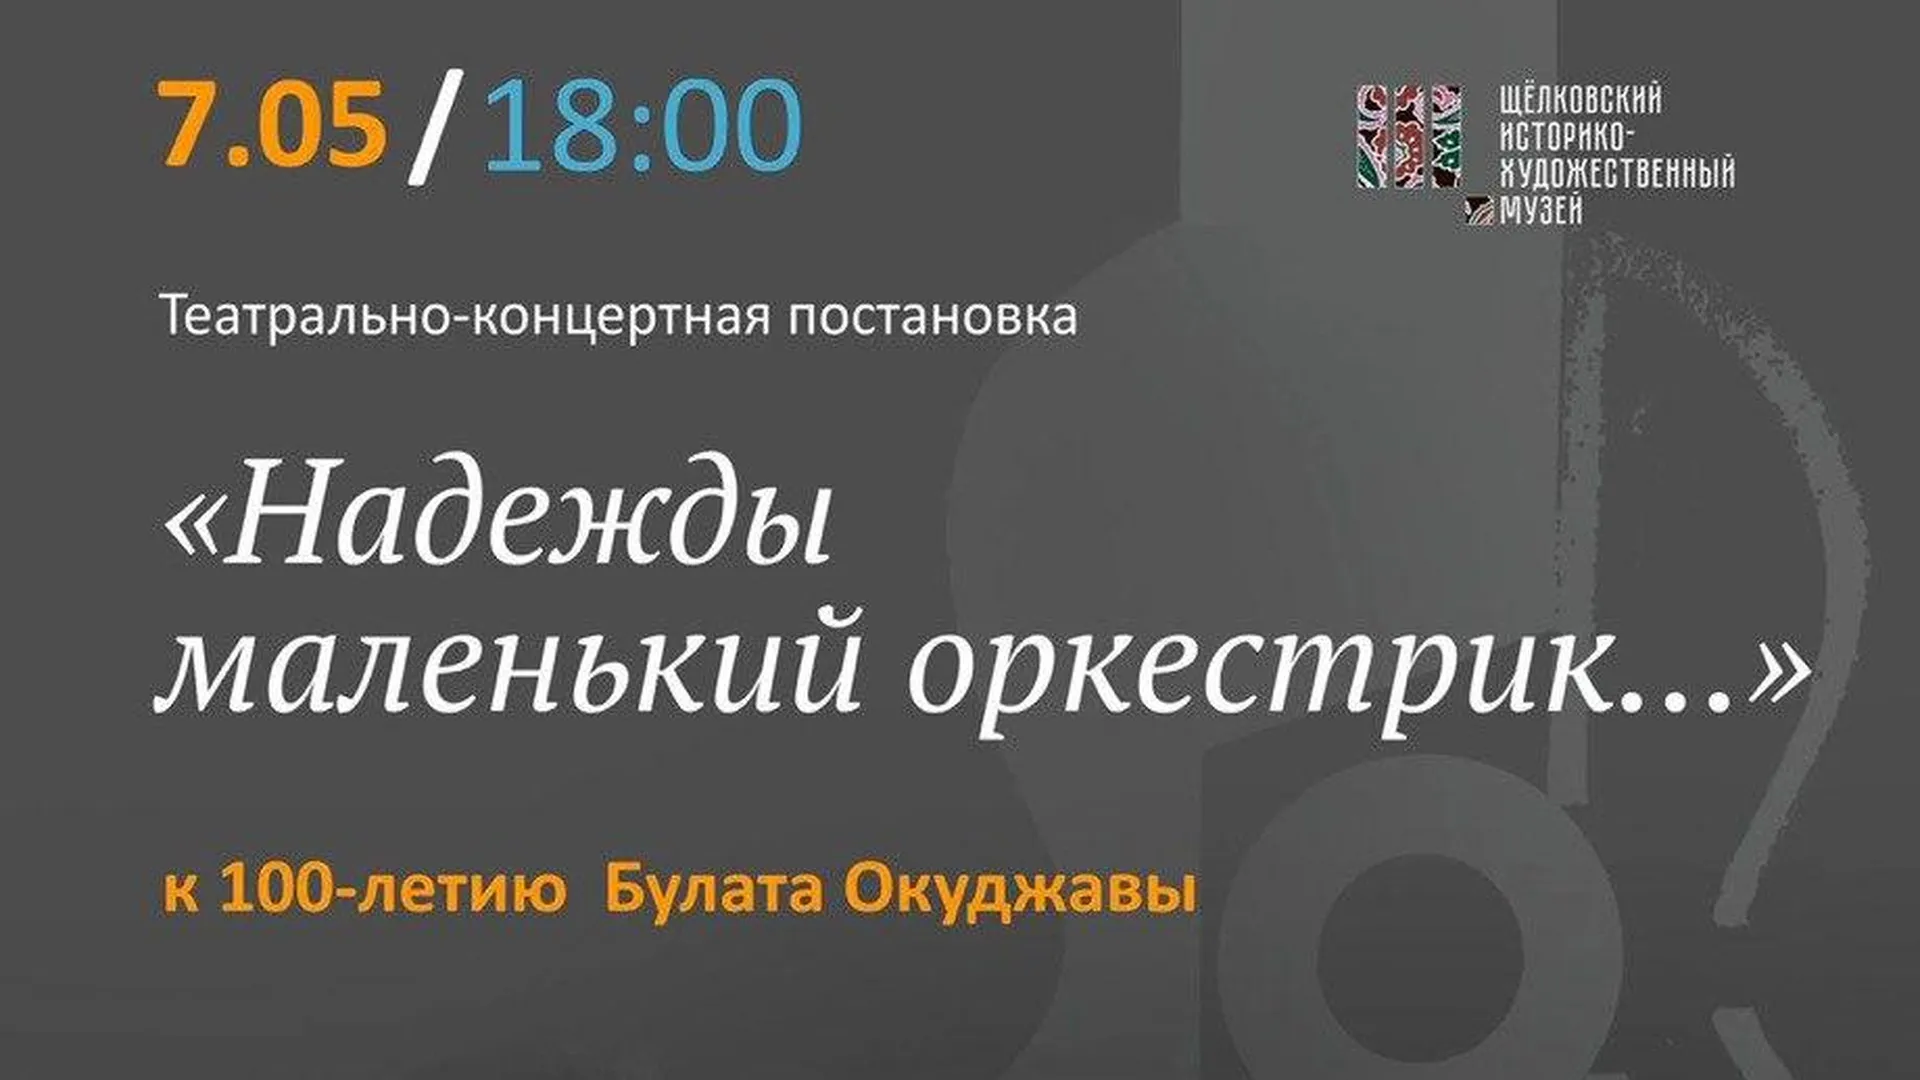 Историко-художественный музей Шелкова 7 мая проведет программы ко Дню Победы